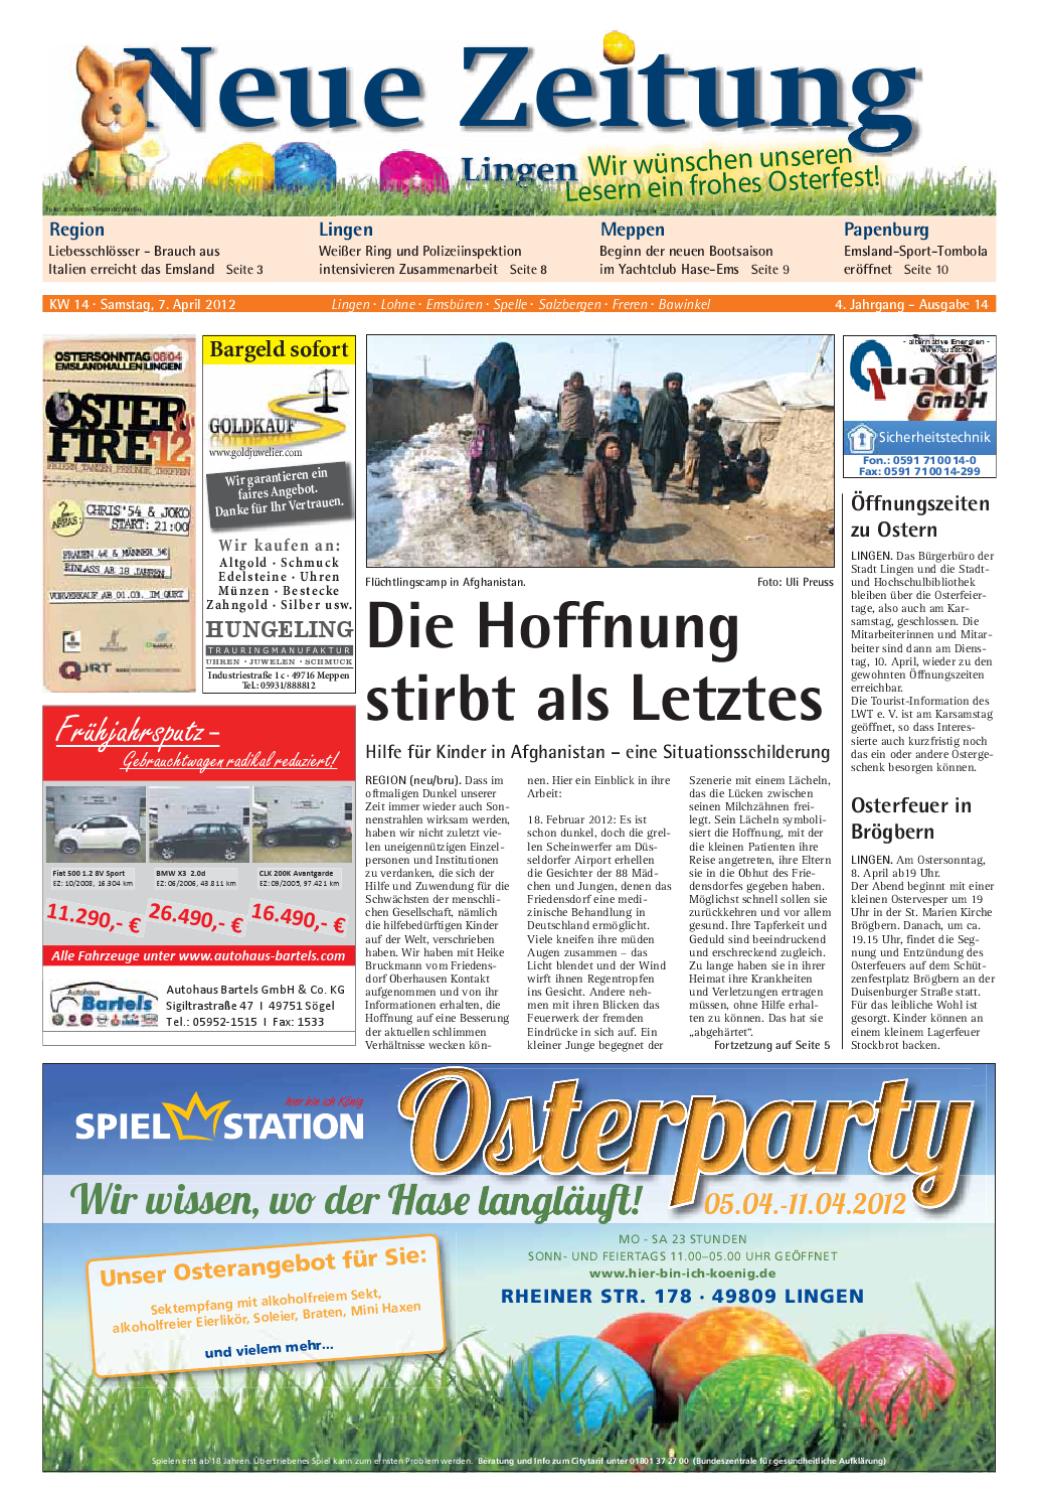 Apotheke Zoologischer Garten Best Of Neue Zeitung Ausgabe Lingen Kw 14 2012 by Gerhard Verlag